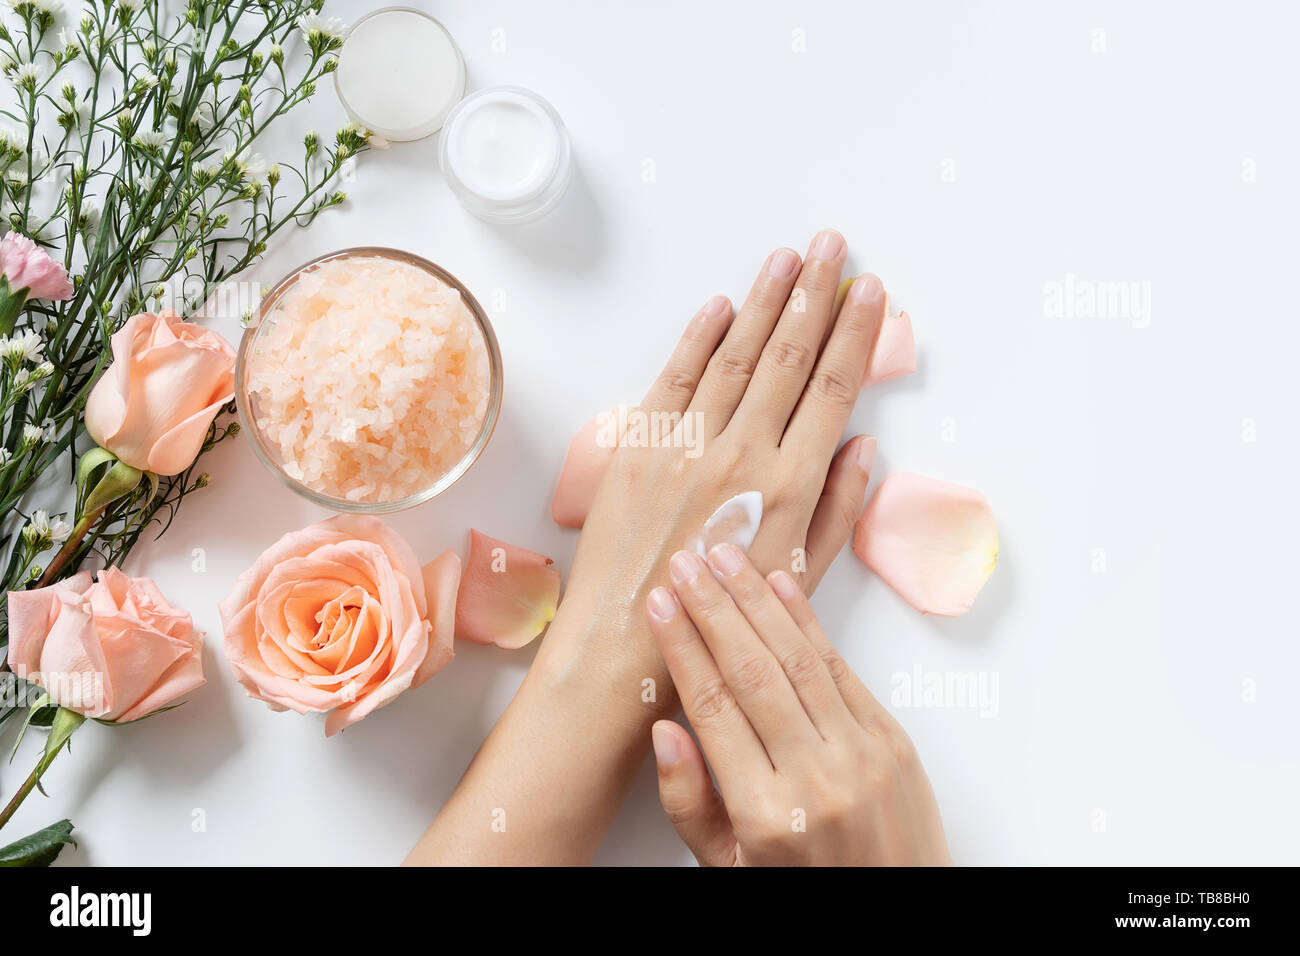 Natürliche Hautpflege Konzept. Frau Weiß Creme auf die Hände auftragen auf weißem Hintergrund mit Jar von kosmetischen Creme, Salz Spa Peeling, rosa und weißen Blüten Stockfoto